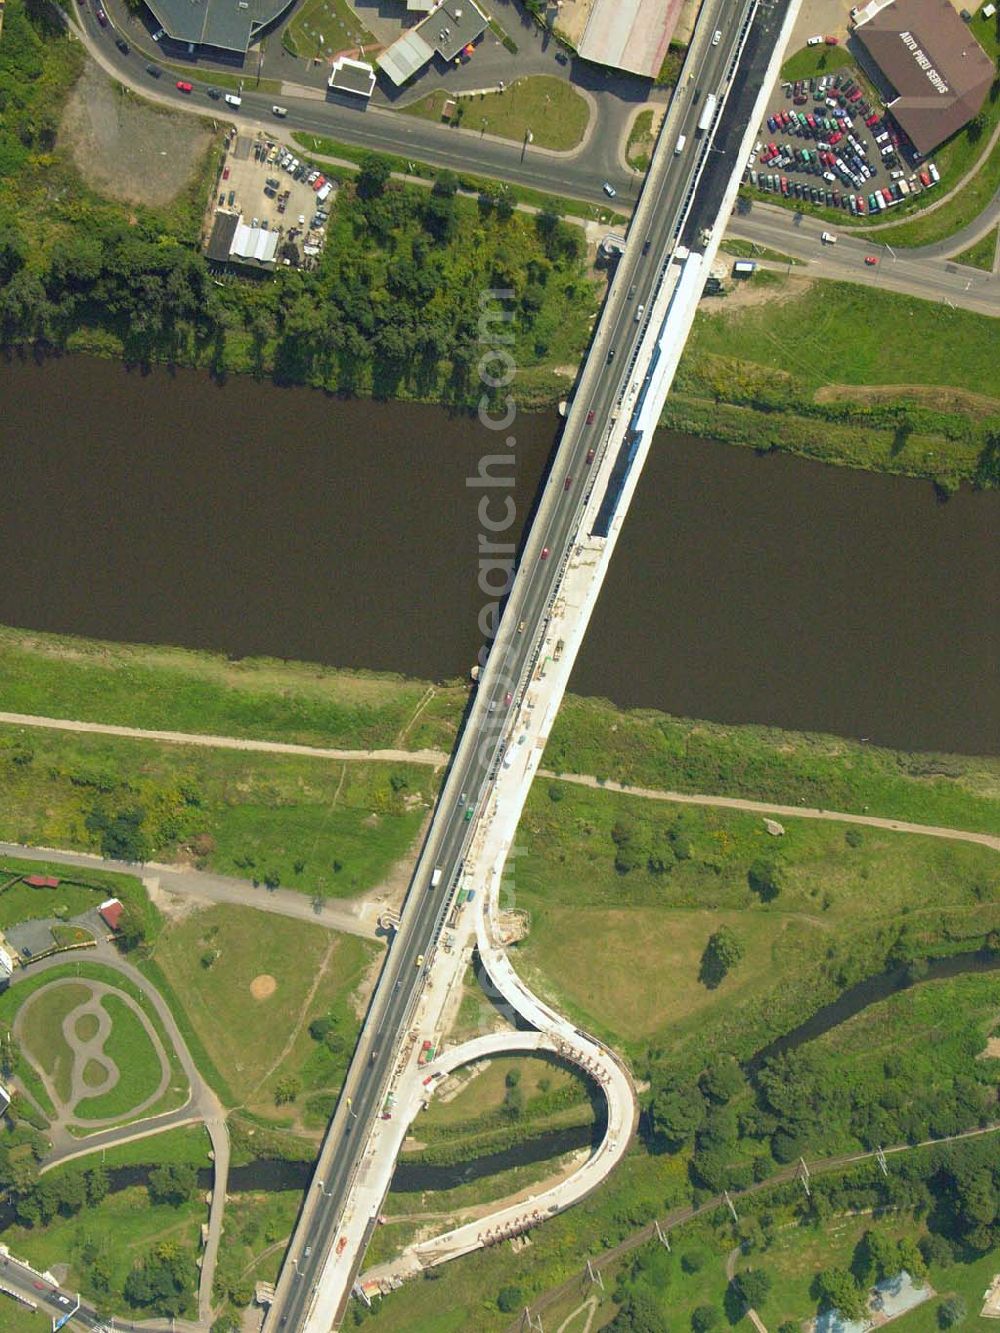 Aerial image D??ín (Tetschen - Bodenbach) - Blick auf die Brücke der Bundesstraße E 442/62/13 in D??ín (Tetschen - Bodenbach), die über die Elbe führt.